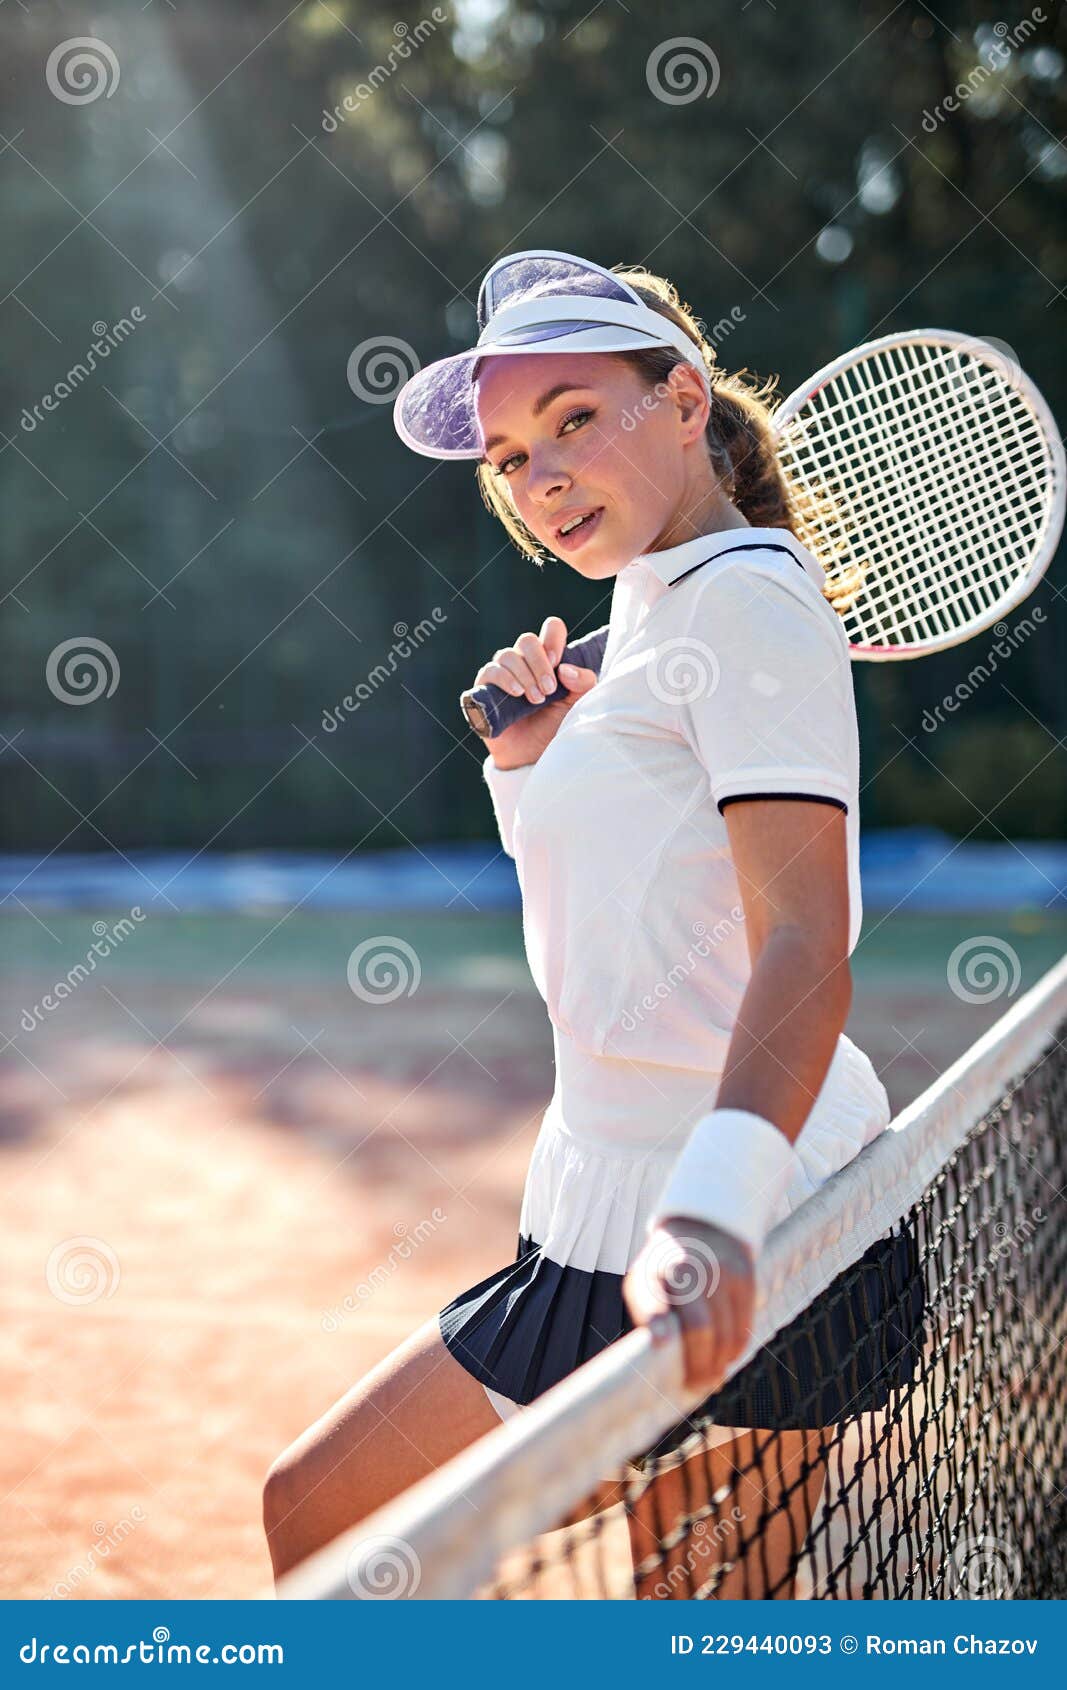 Está Listo Para Jugar. Retrato De Una Mujer Sexy En Ropa Sosteniendo Raqueta De Tenis Imagen de archivo - Imagen de mano, 229440093